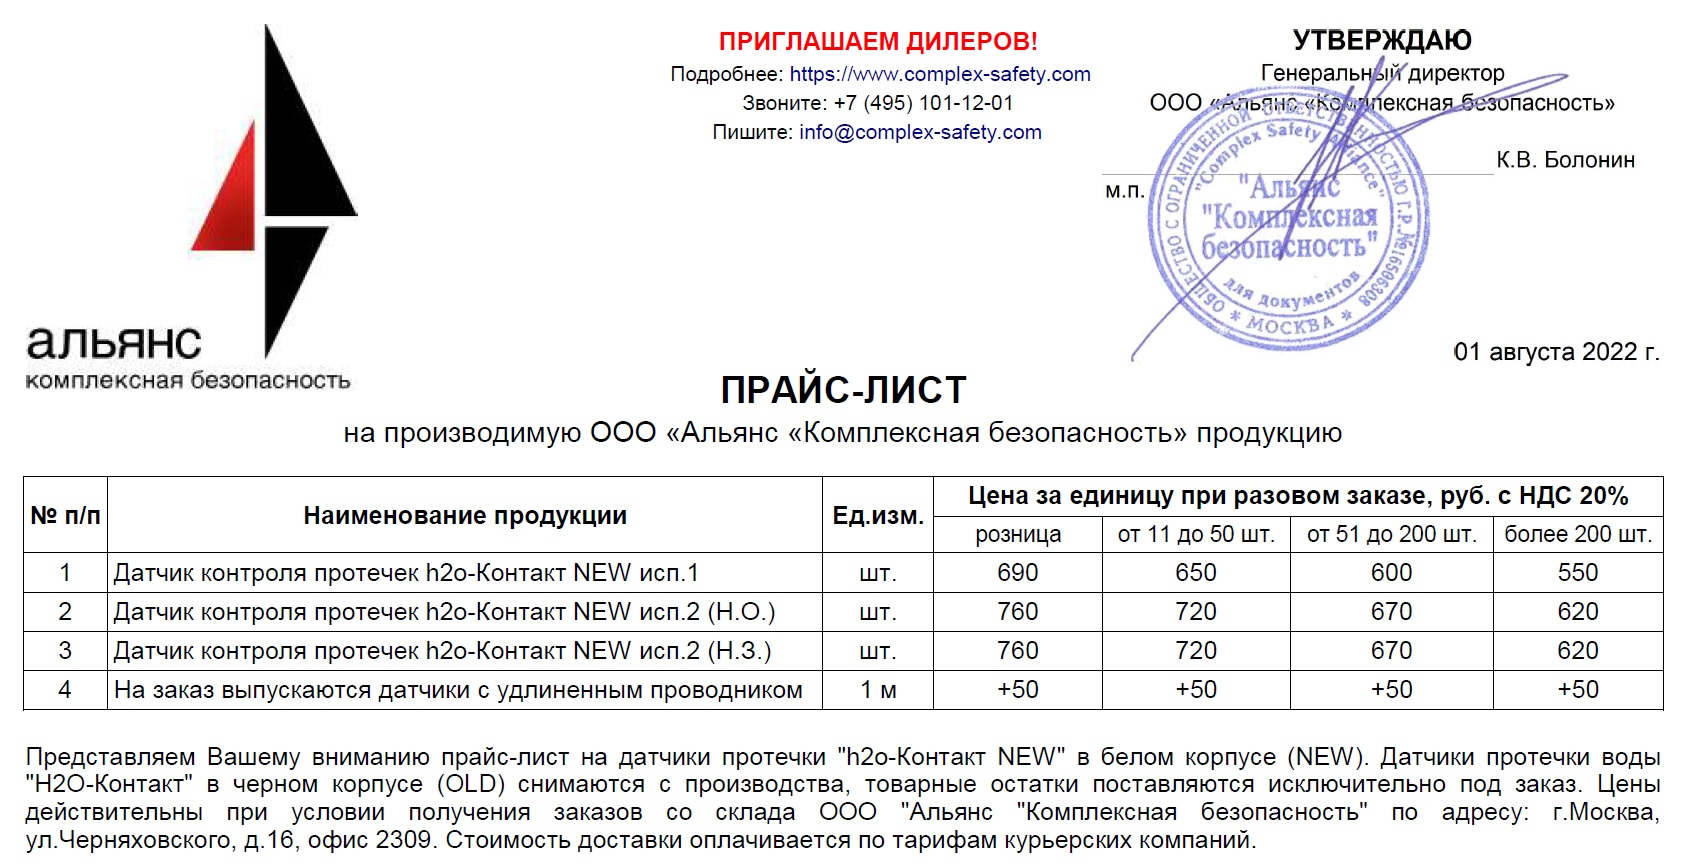 Прайс-лист на датчики протечки h2o-Контакт обновлен с 01.08.2022